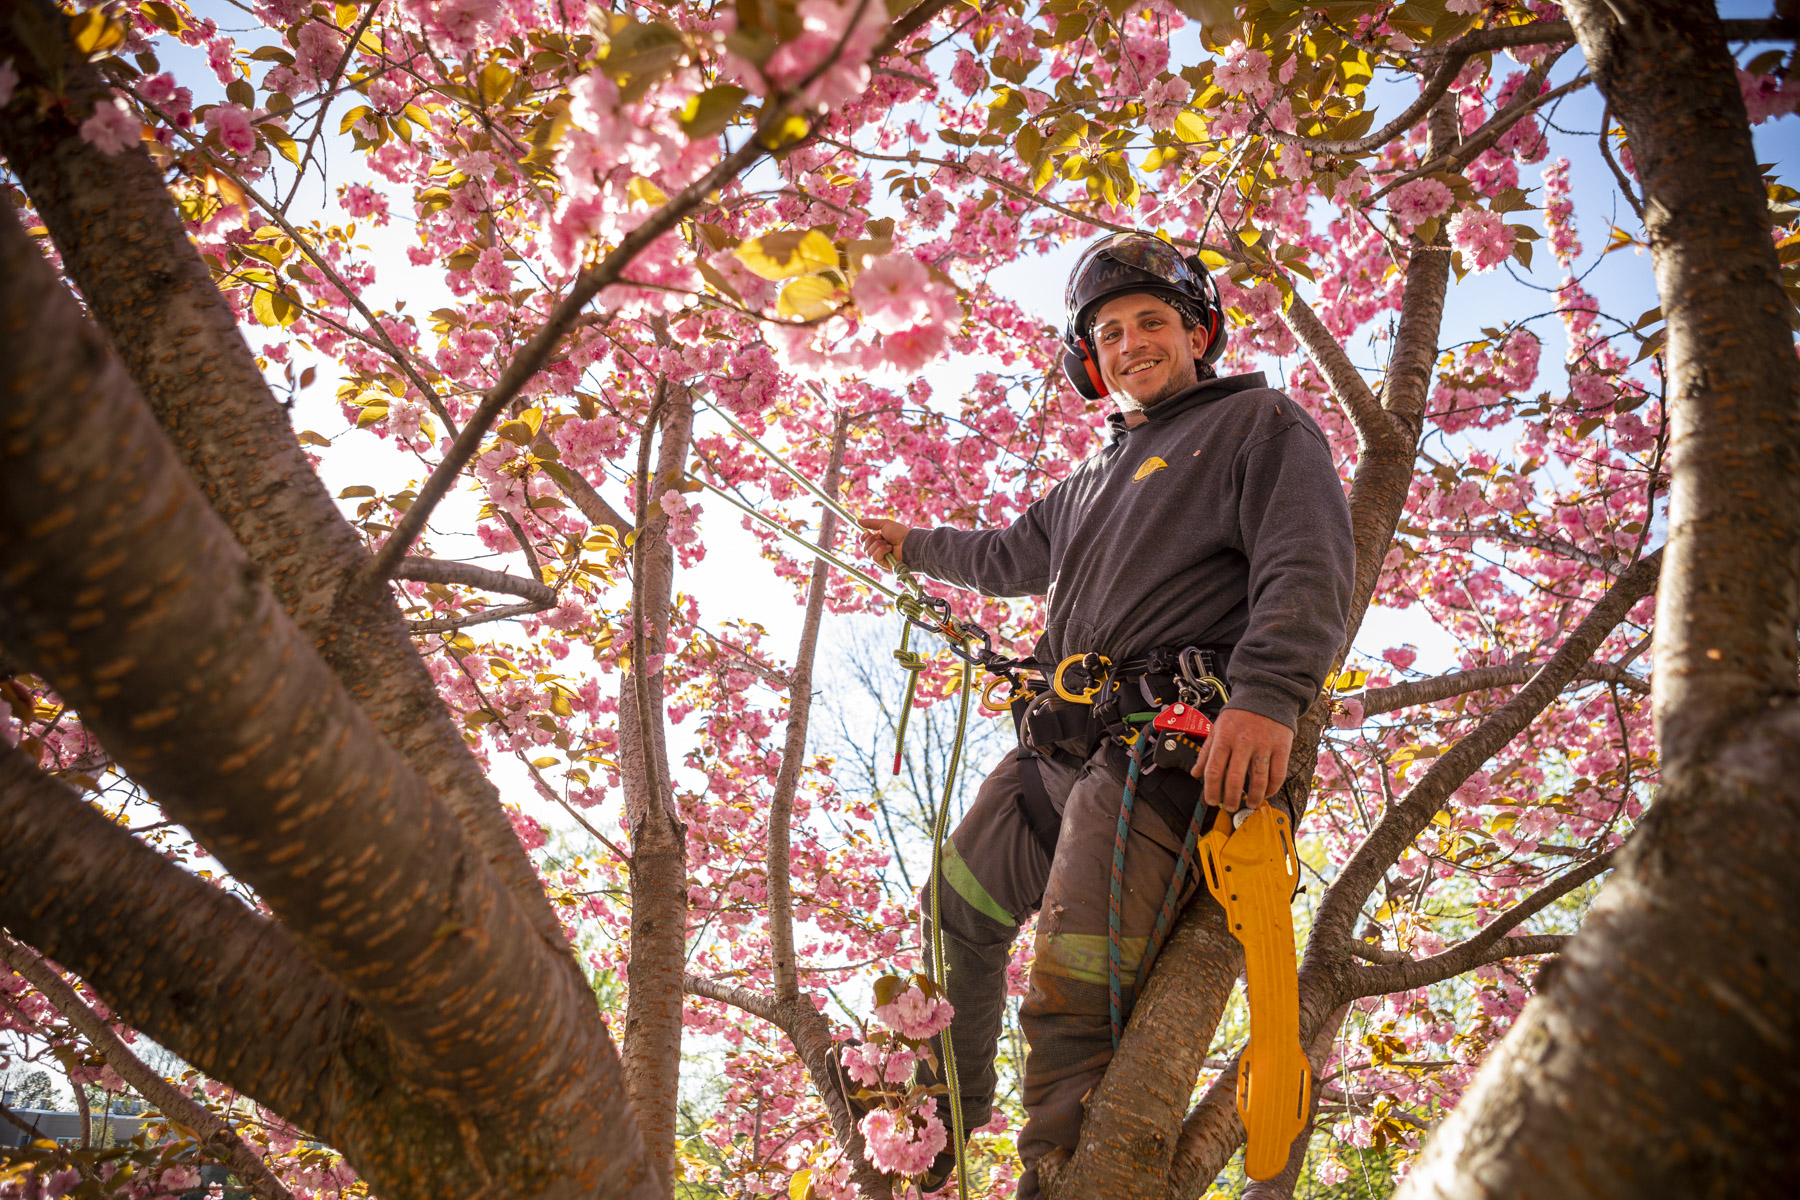 Piedmont Tree Climbing (PTC): Tree Climbing?